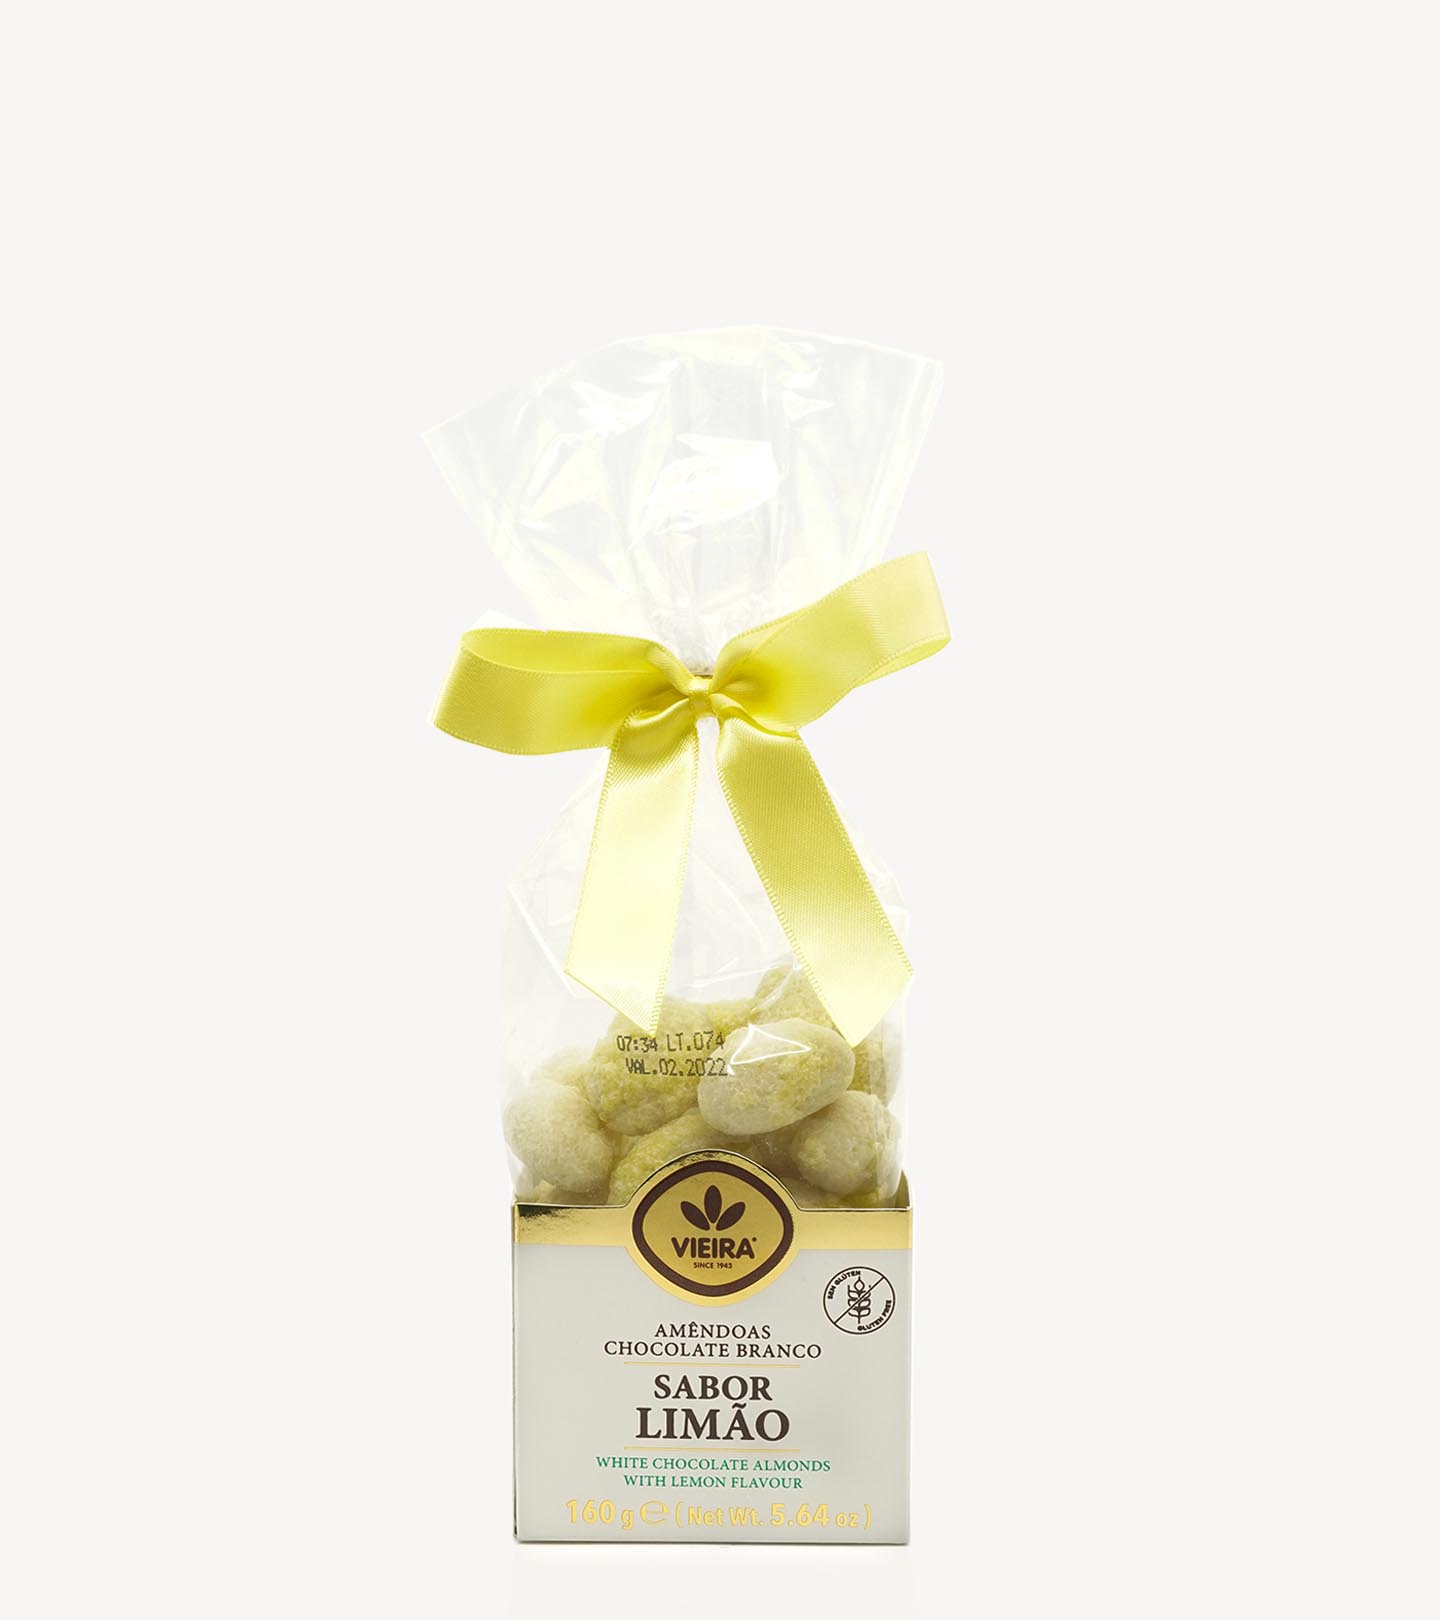 Amêndoas Chocolate Branco com Sabor Limão Vieira 160g